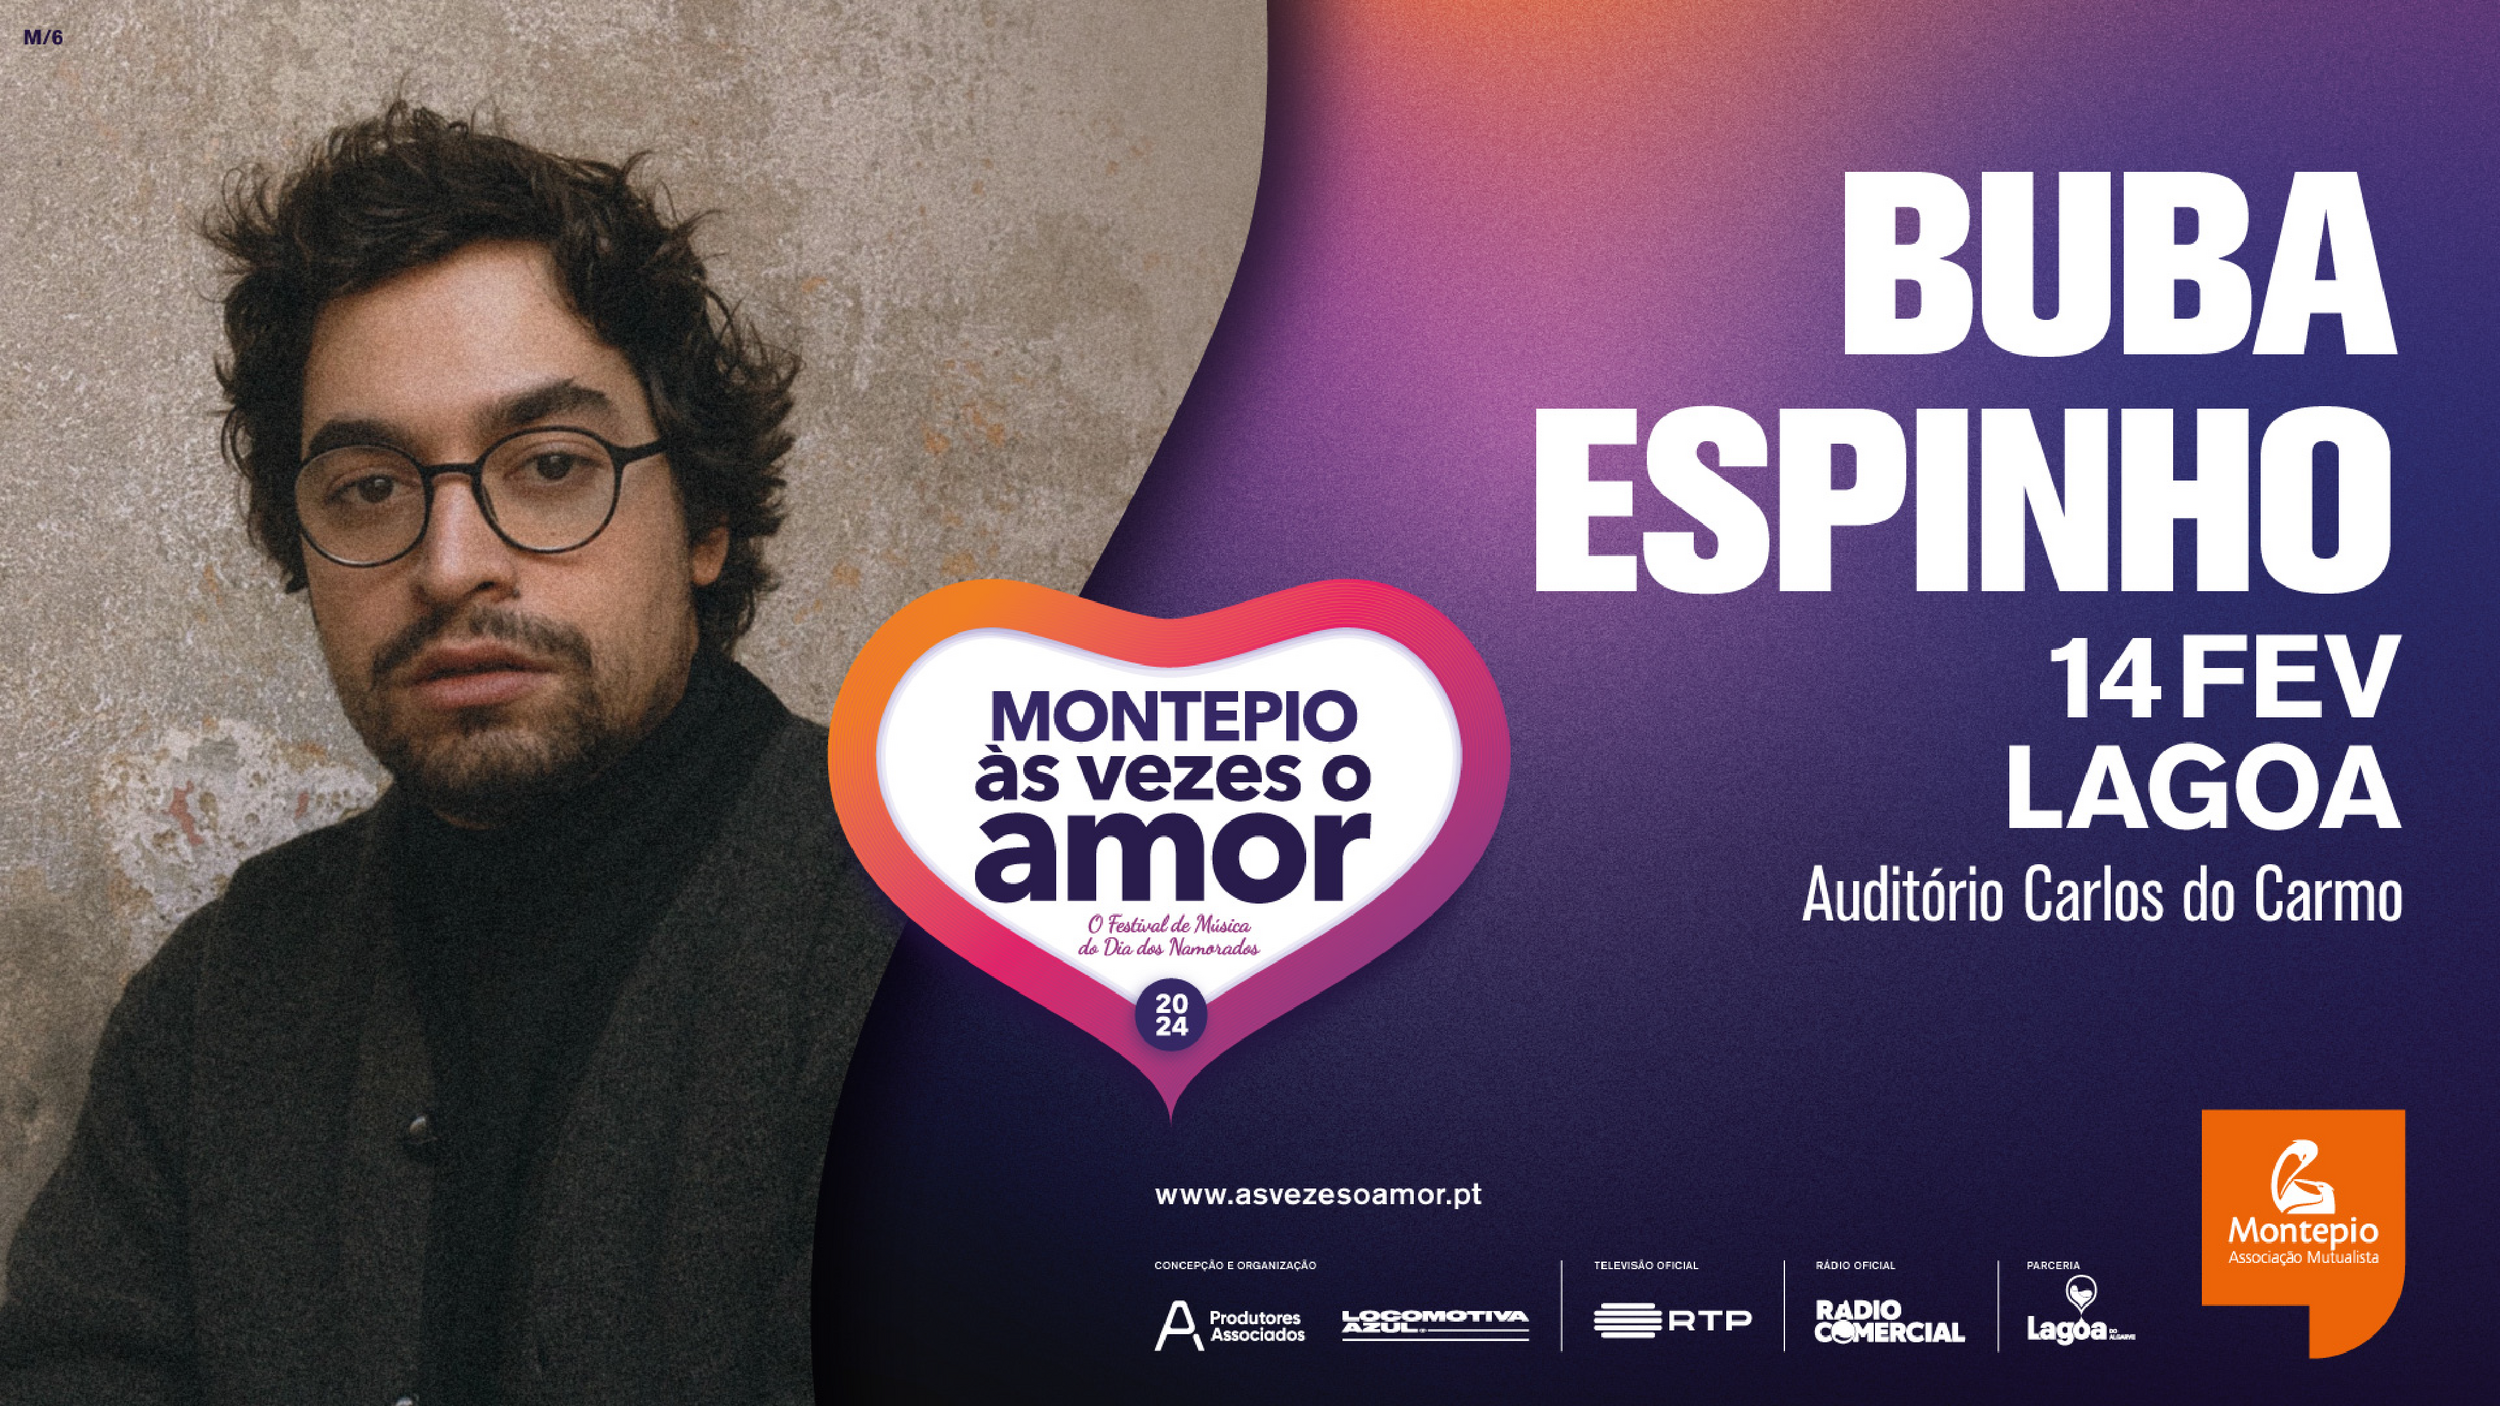 Festival Montepio Às Vezes o Amor | Buba Espinho